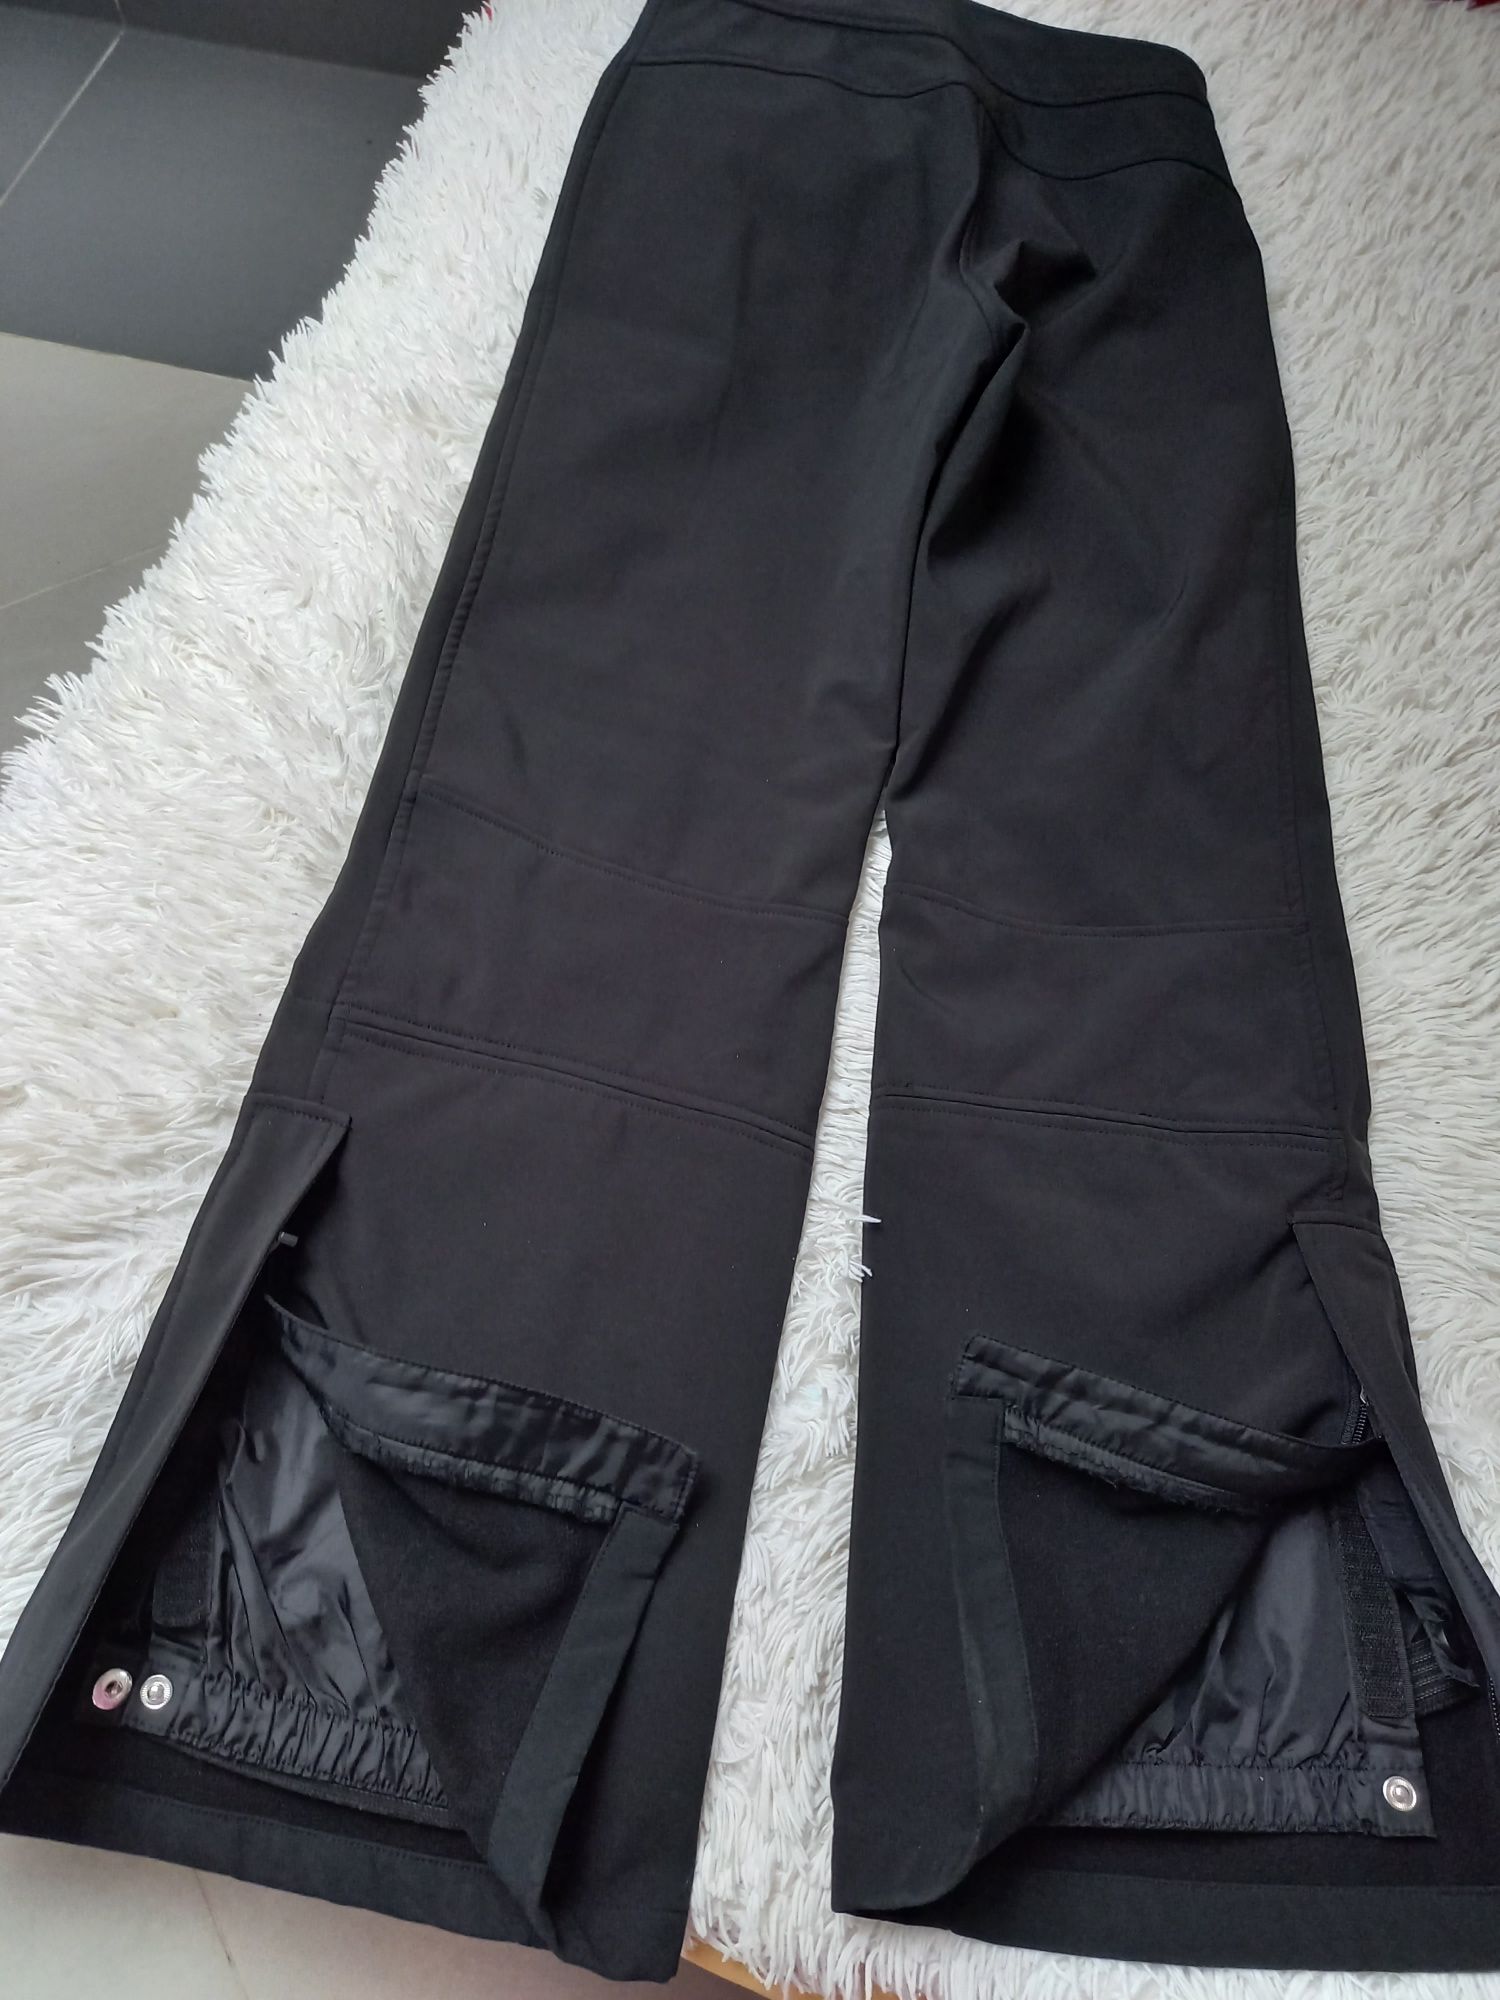 Spodnie narciarskie męskie czarne rozmiar 38